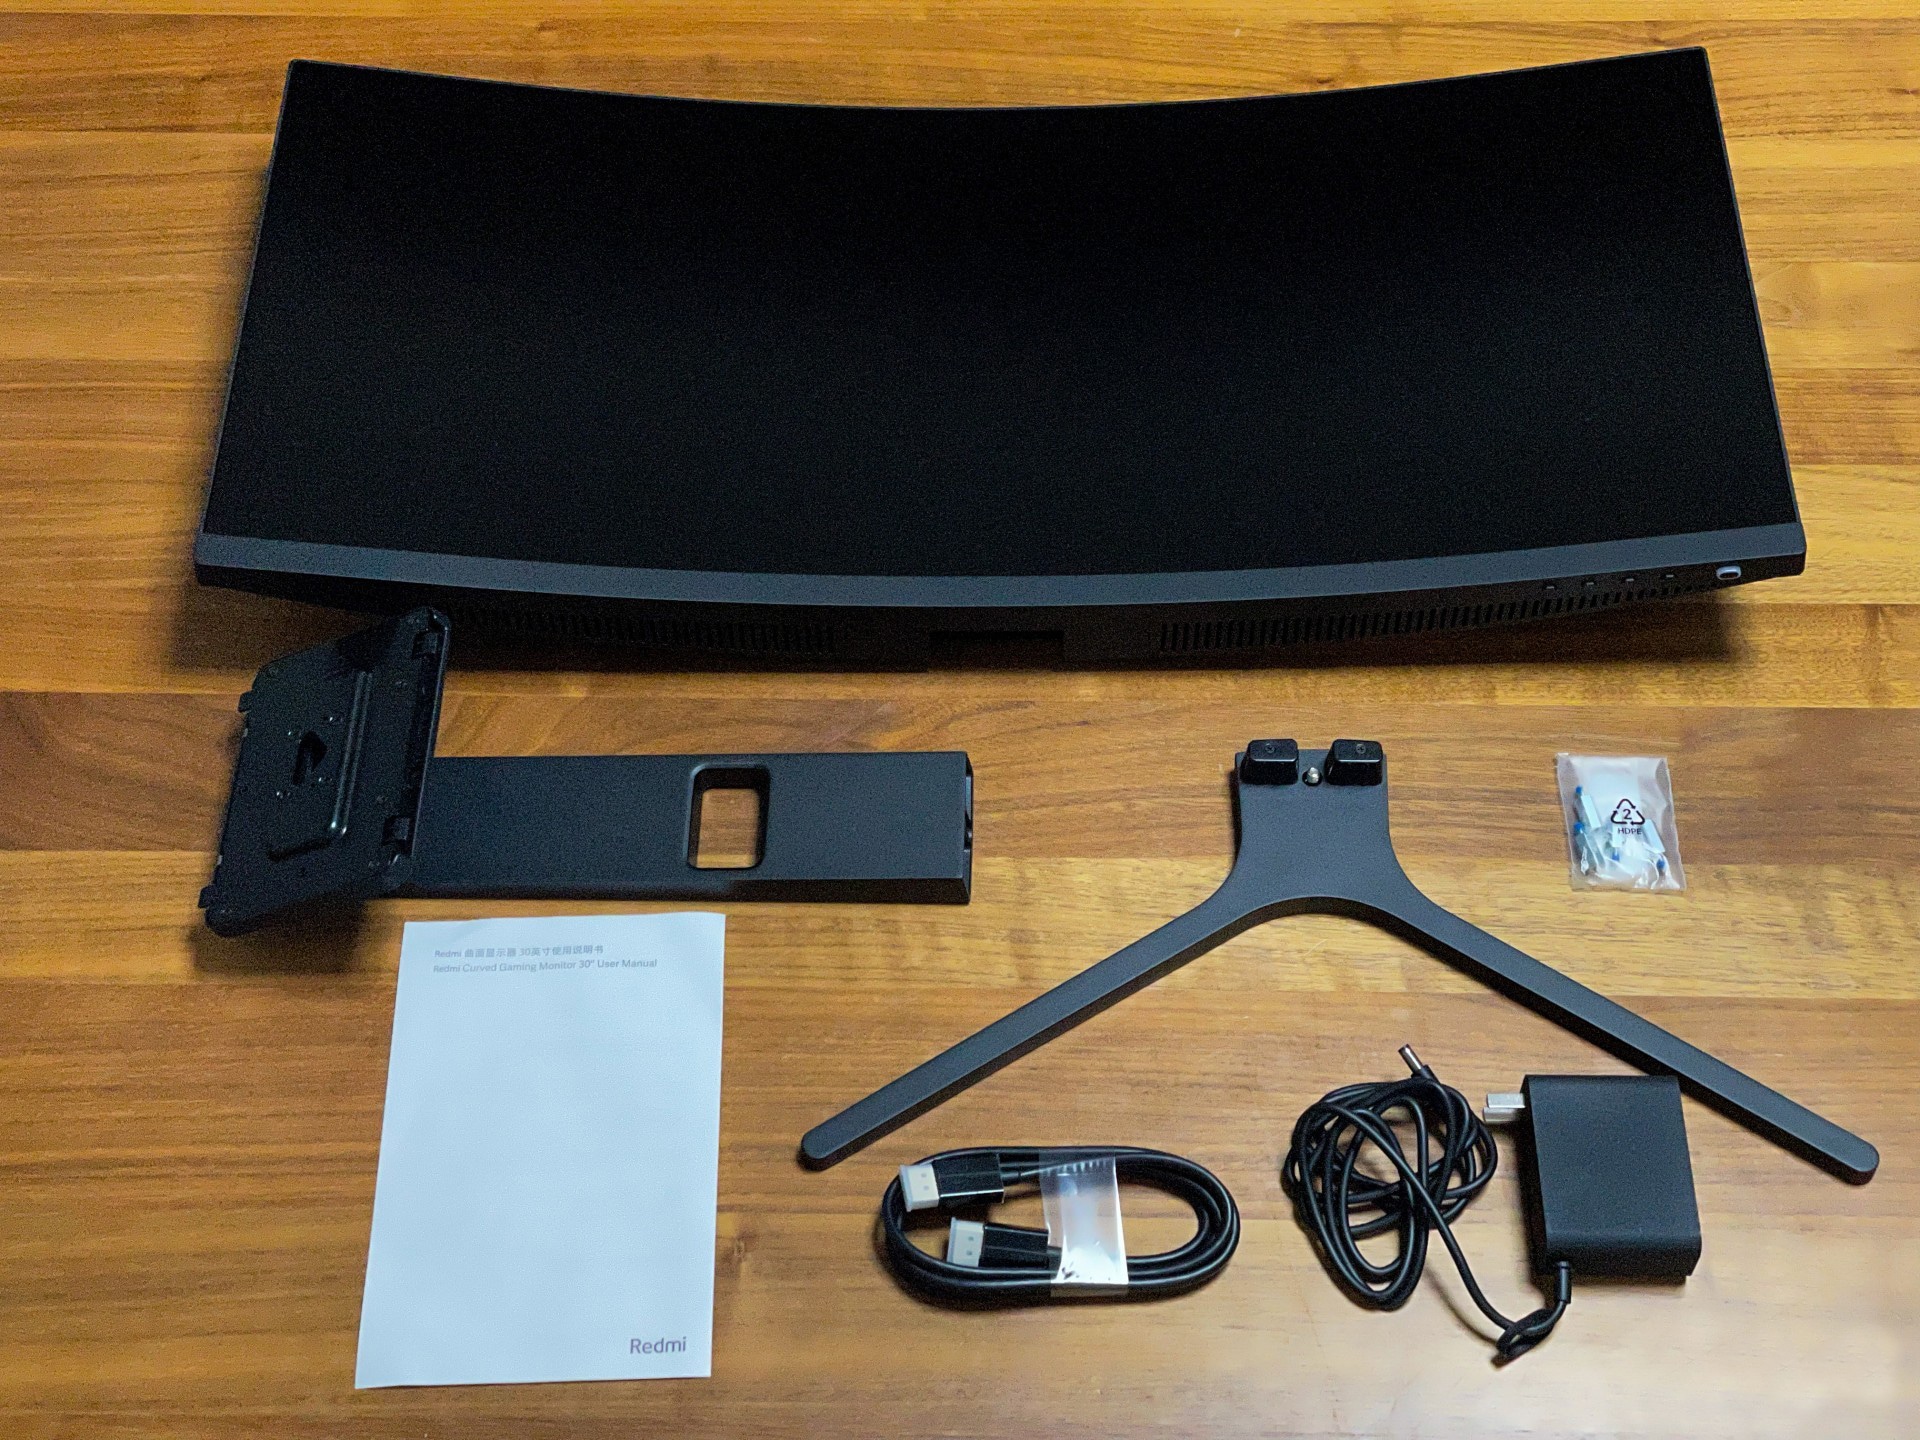 Redmi Curved Monitor 30” box content